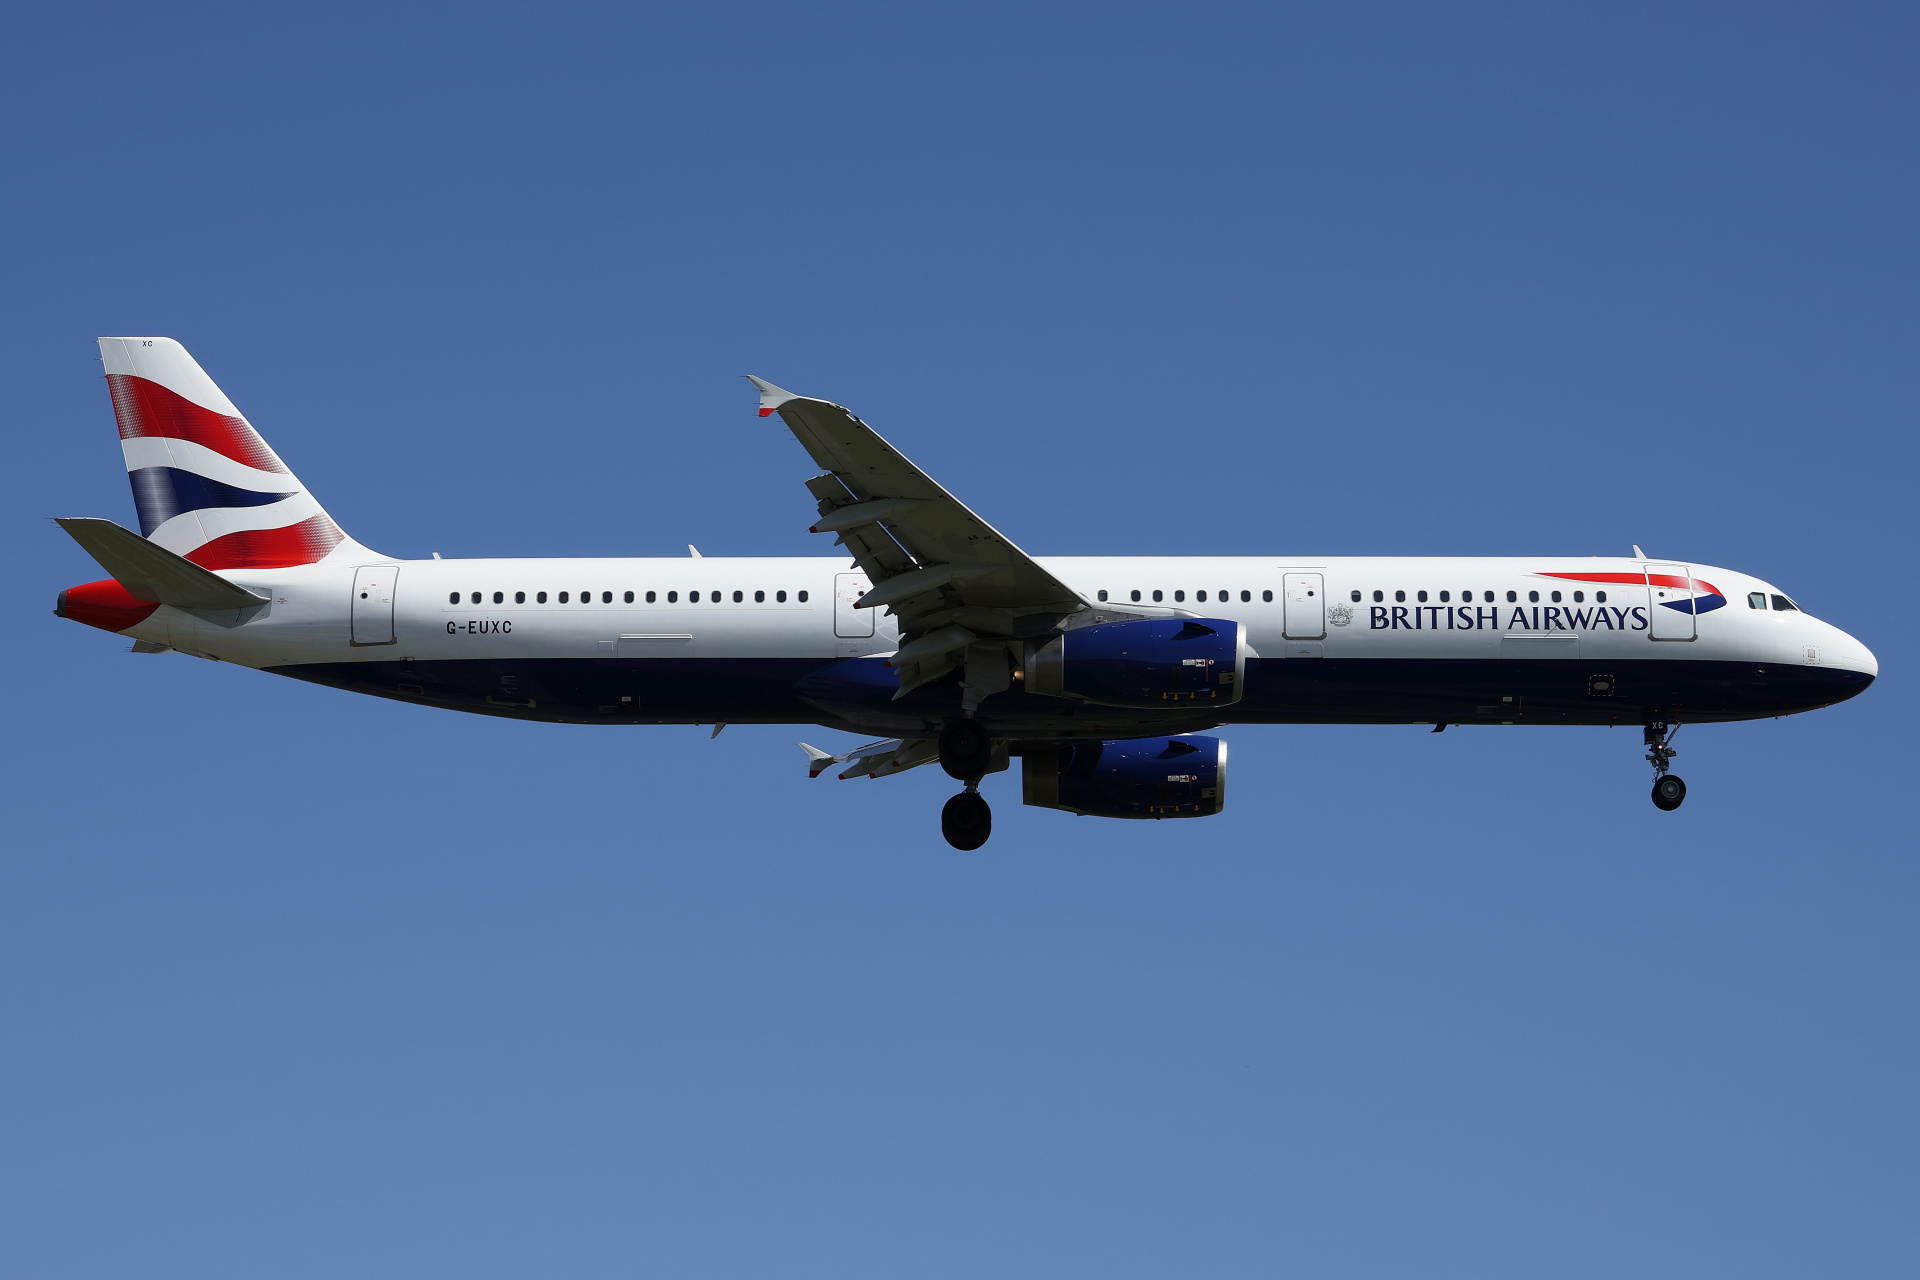 G-EUXC (Aircraft » EPWA Spotting » Airbus A321-200 » British Airways)